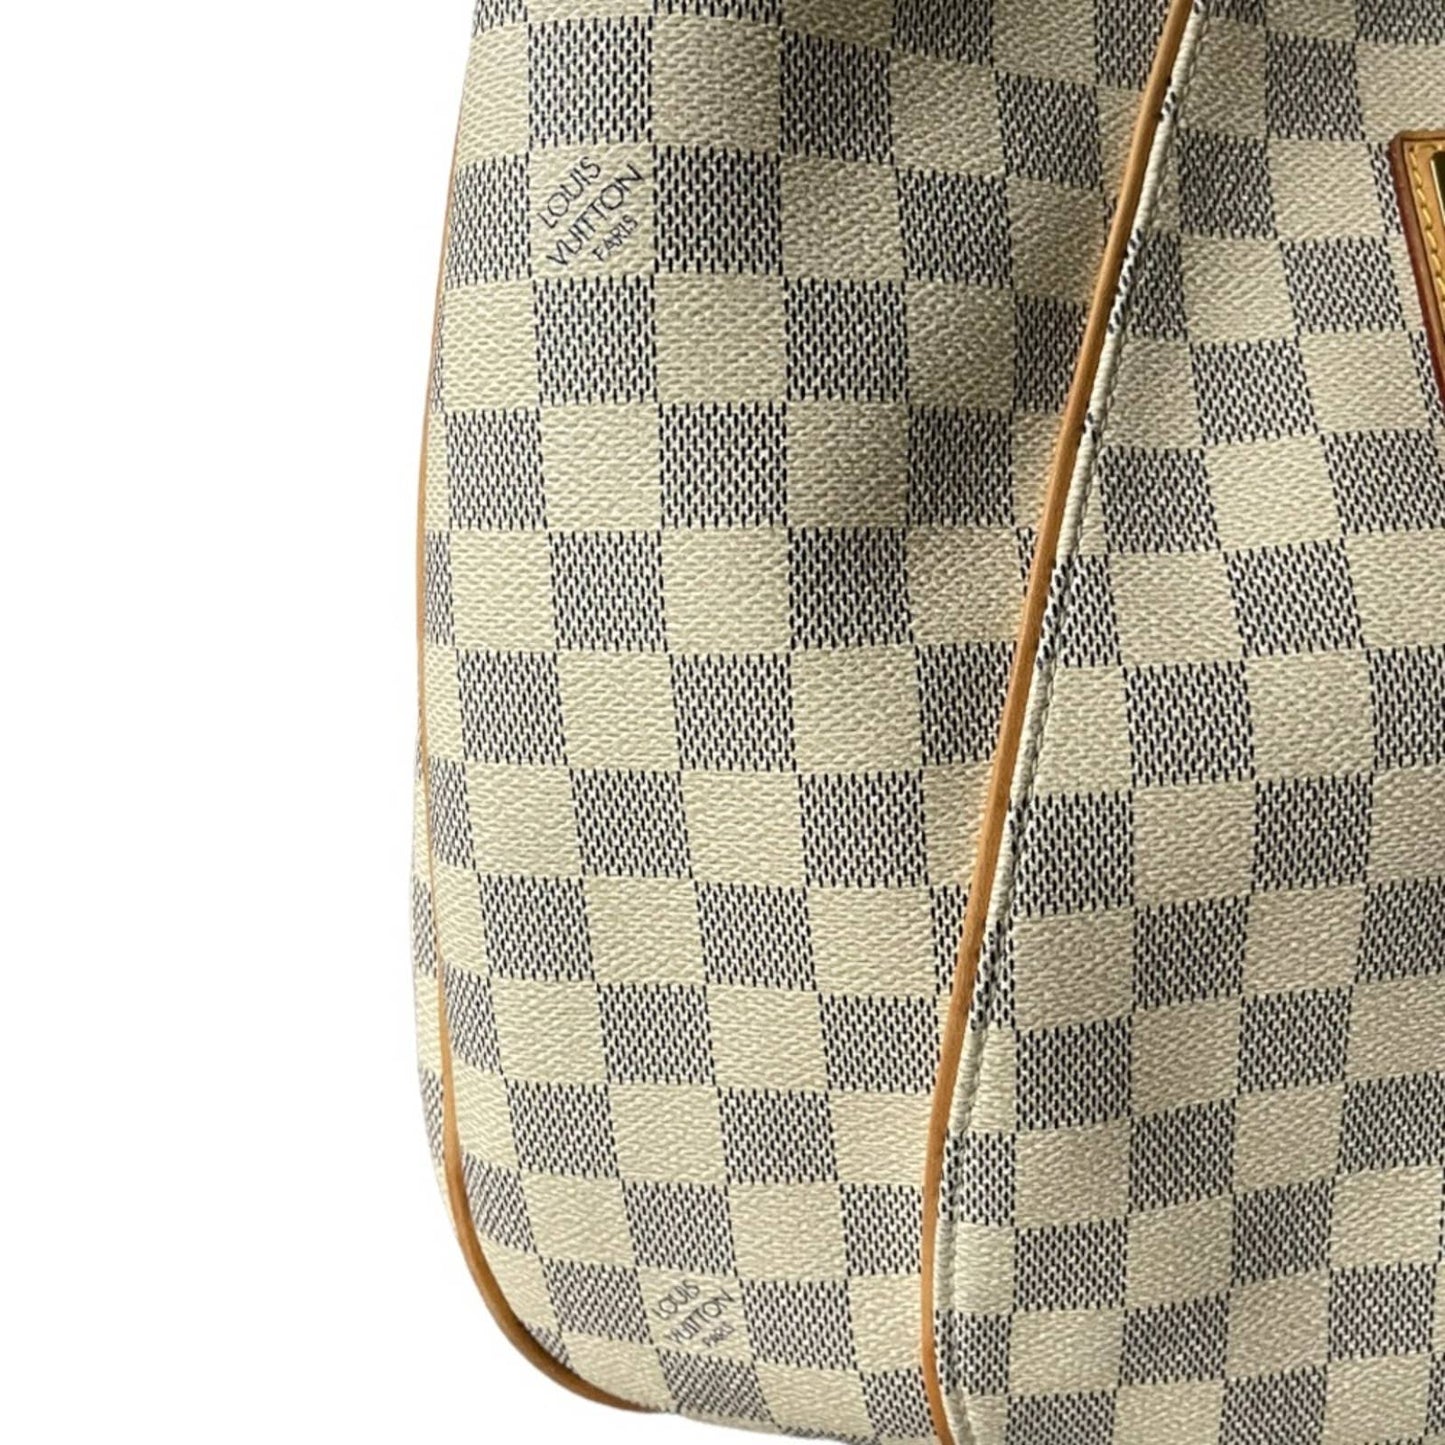 Louis Vuitton Galliera PM Monogram Canvas Handbag Shoulder Bag Damier Azur - Premium  from Louis Vuitton - Just $1499.00! Shop now at Finds For You